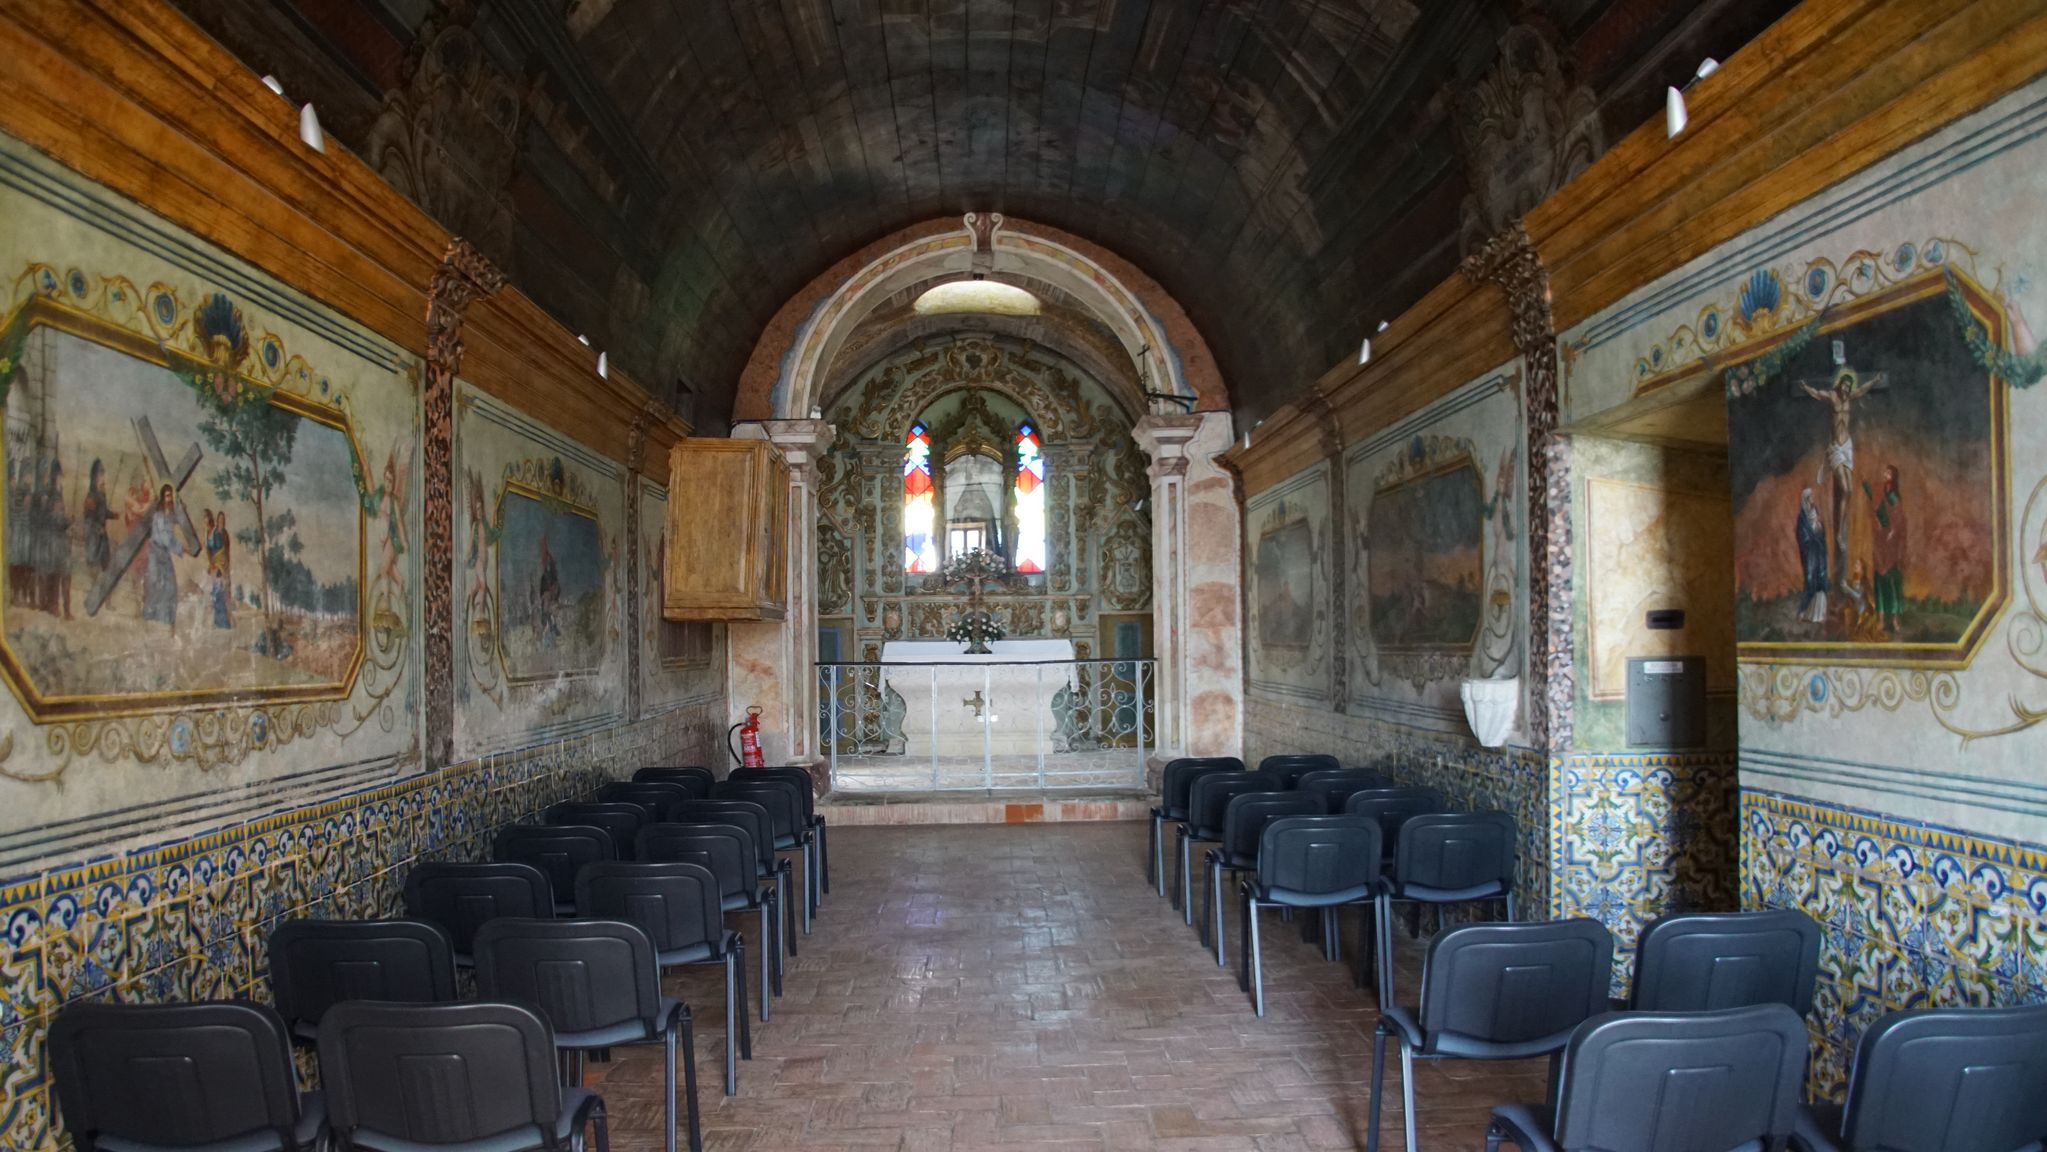 Par contre dans l'ancienne chapelle les murs et le plafond possèdent des peintures sur bois magnifiques